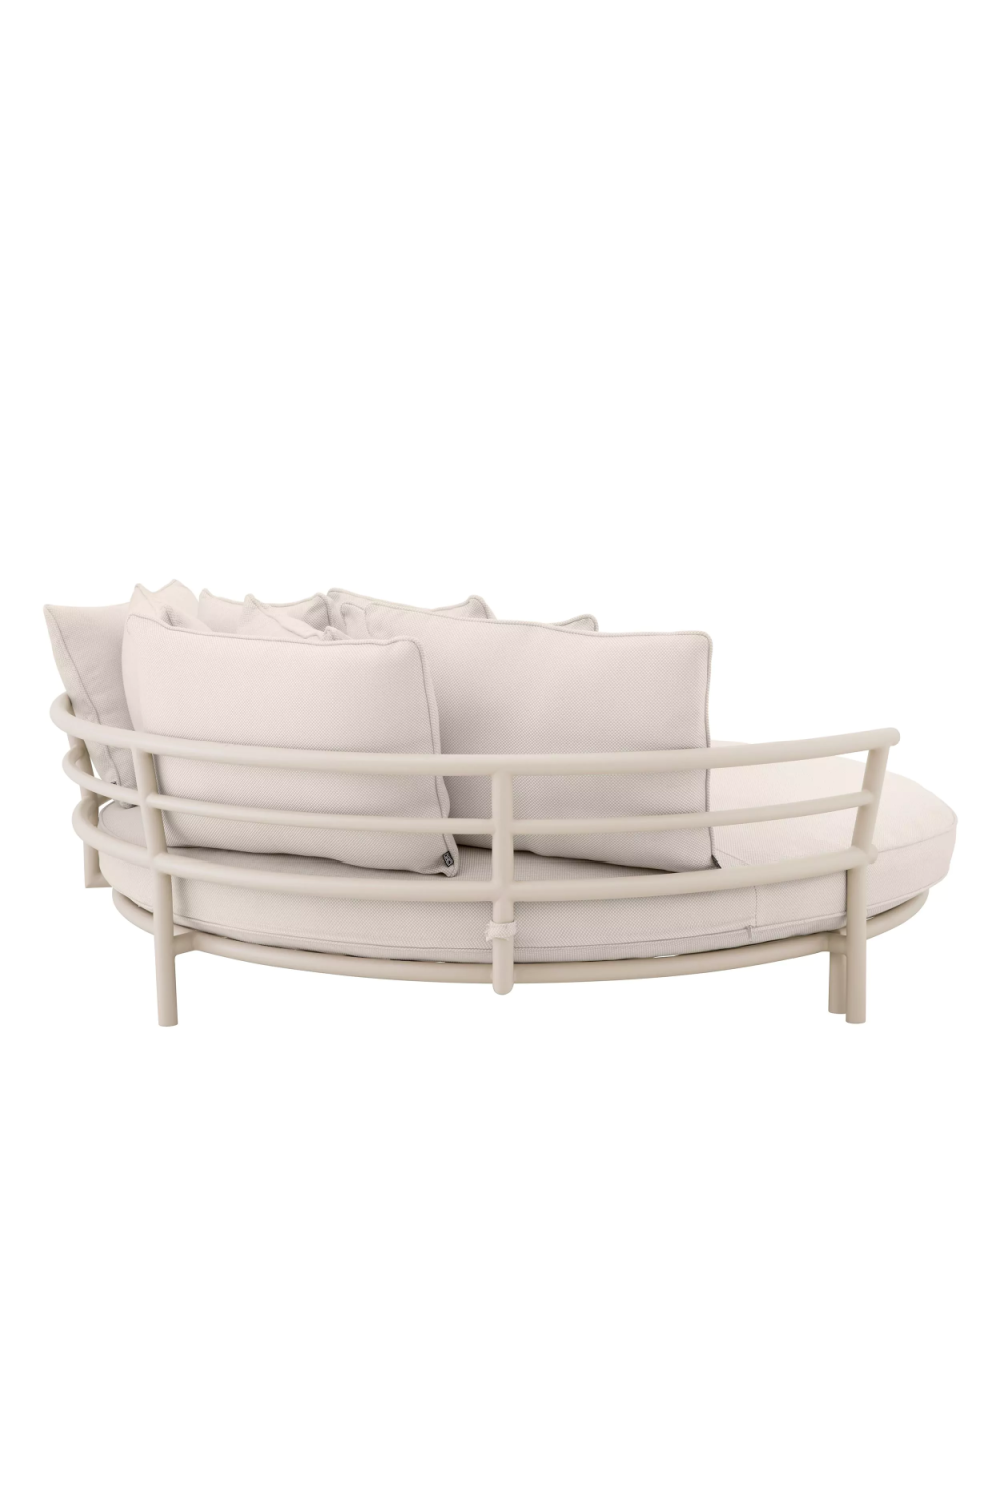 White Round Outdoor Sofa | Eichholtz Laguno | Oroa.com